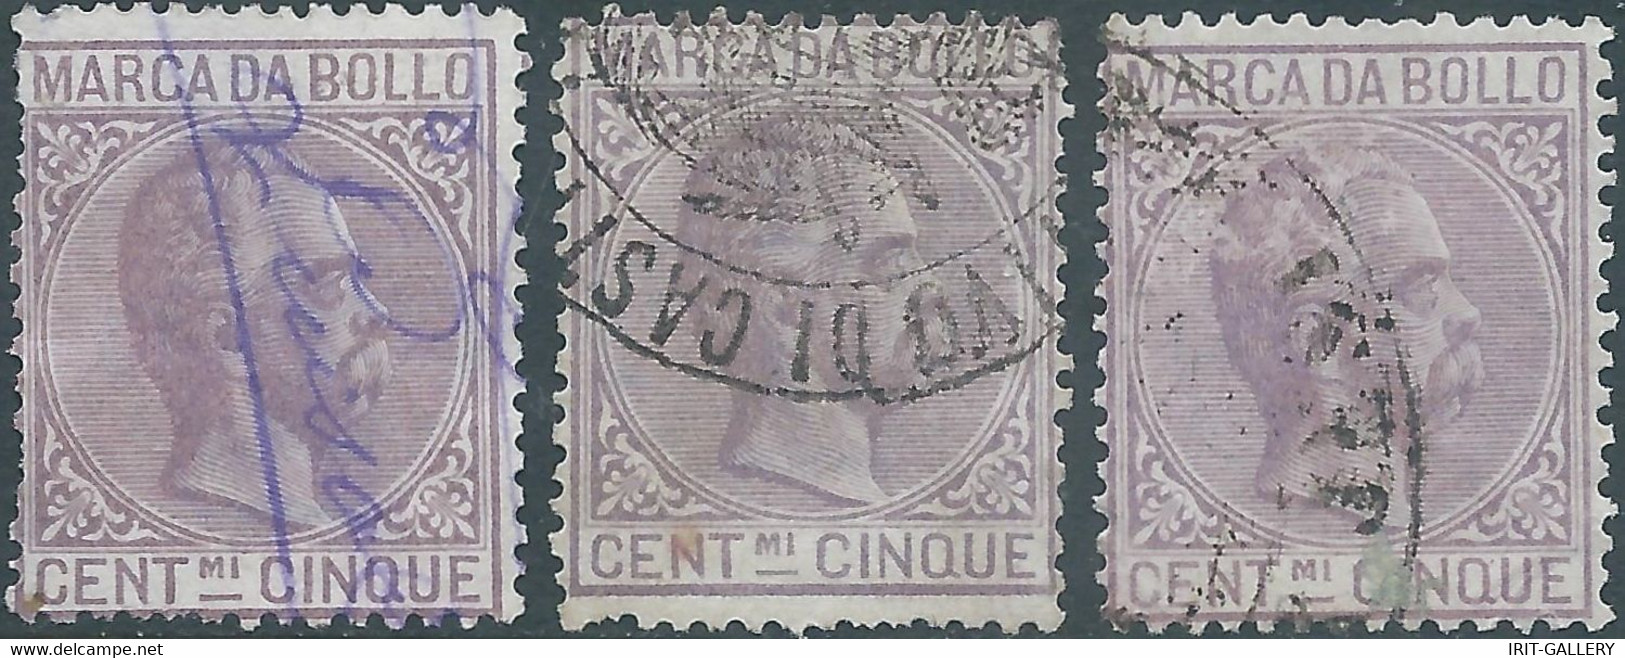 ITALIA-ITALY-ITALIEN,1882 Marca Da Bollo,Revenue Fiscal -Tax,3x 5Cent,Used - Steuermarken